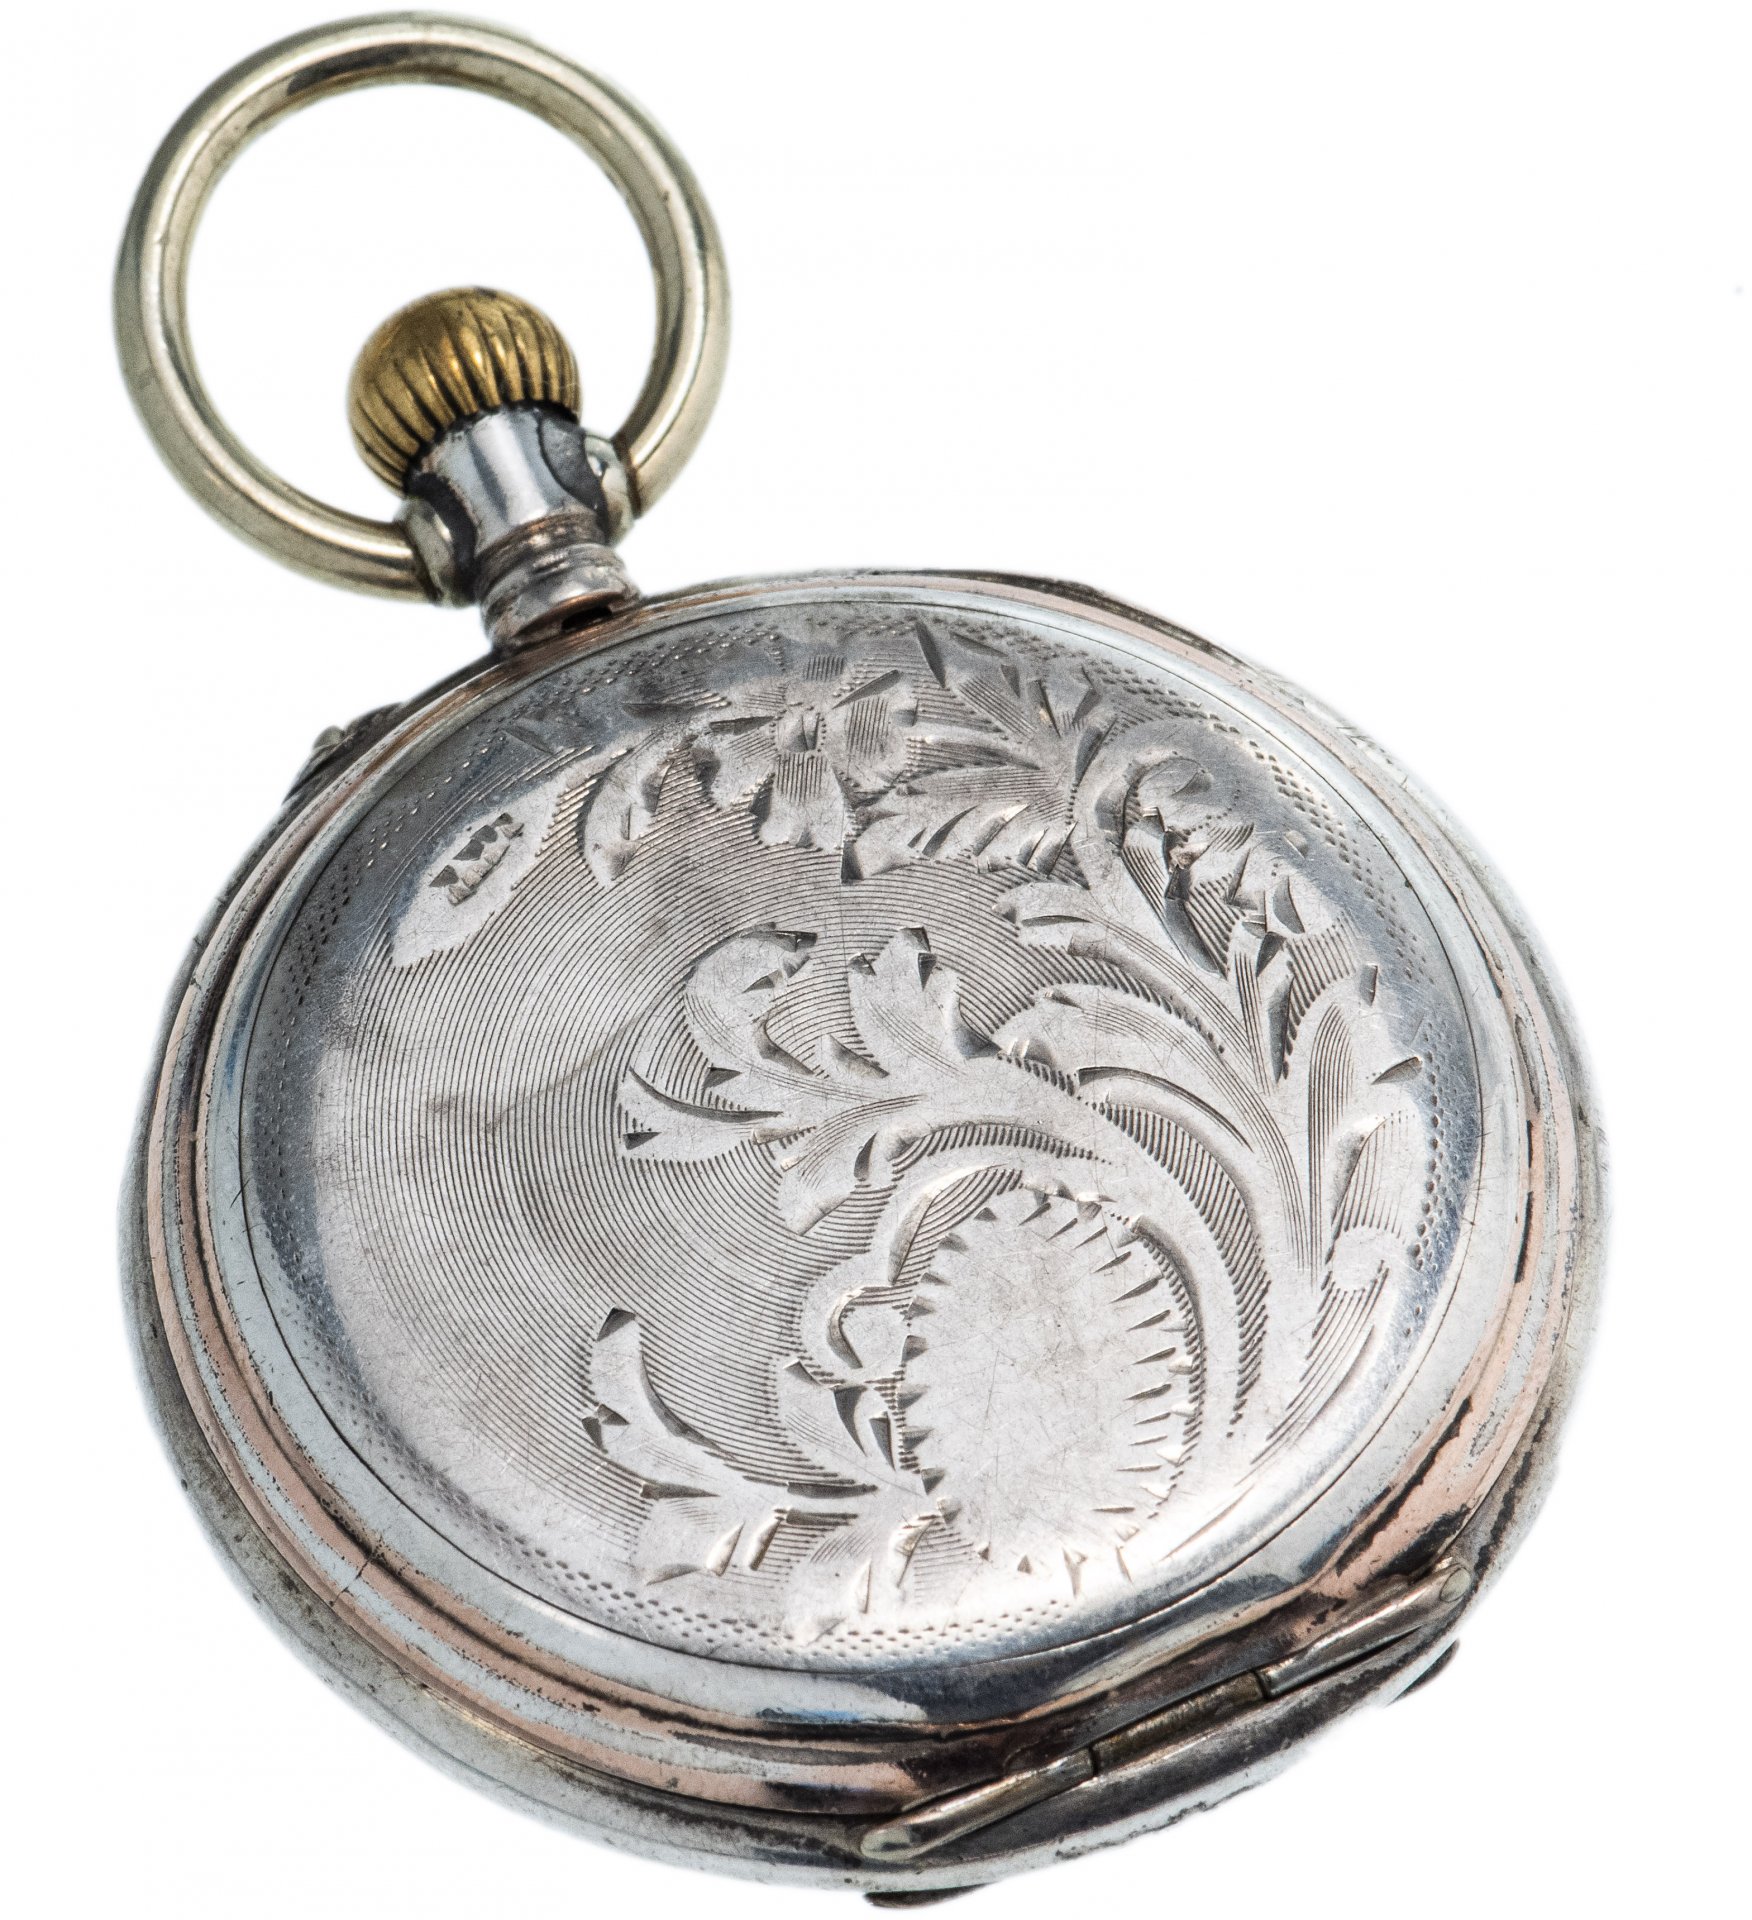 Карманные часы серебро. Карманные часы Galonne Швейцария. Часы Galonne карманные серебряные. Швейцарские карманные часы серебро Gallonne. Часы серебряные карманные женские Witt.